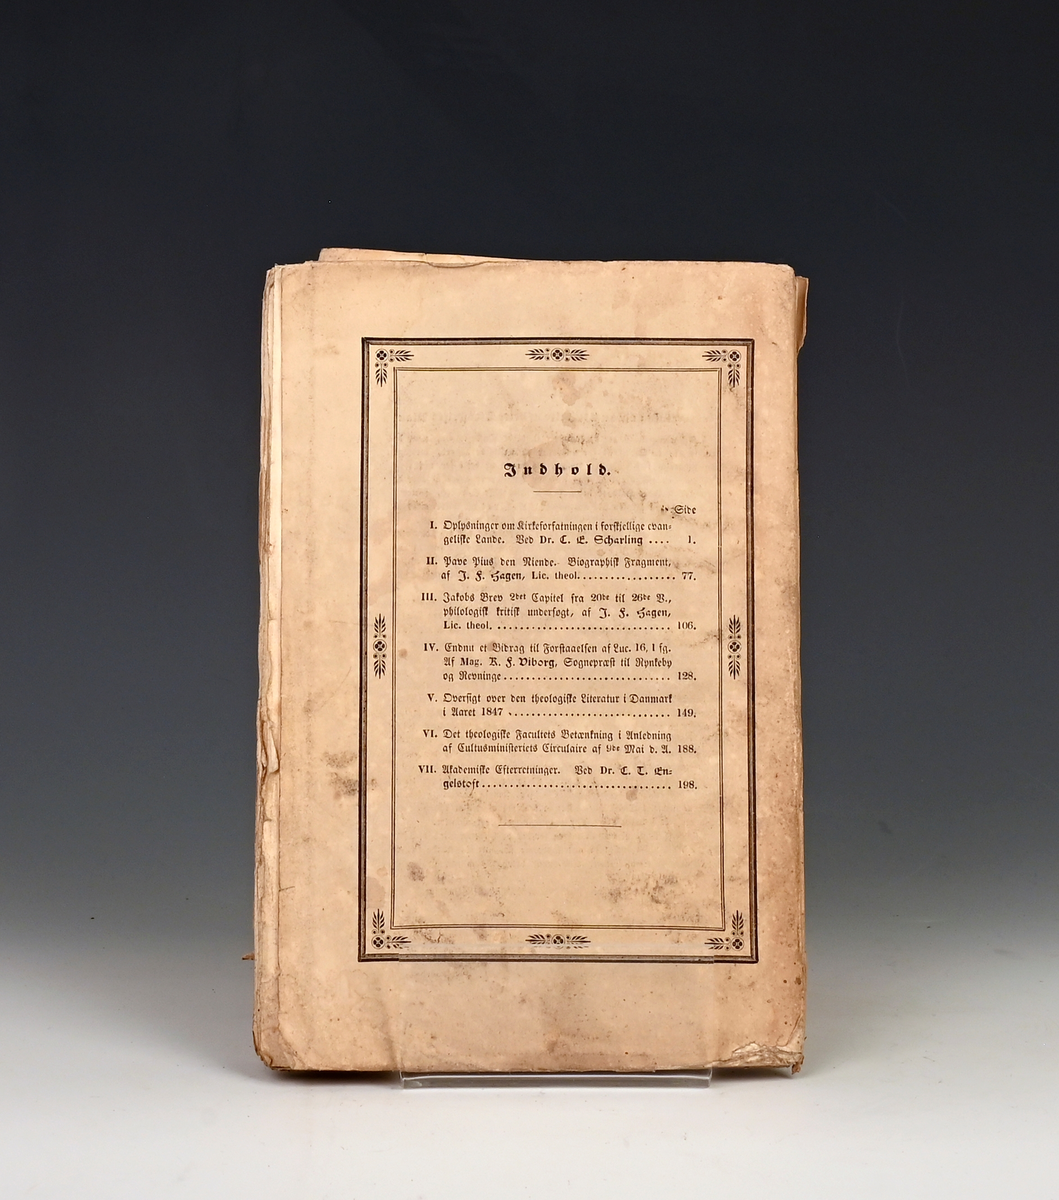 Theologisk Tidsskrift. Ny Række. Udg. af C. E. Scharling og C. T. Engelstofs. 
Sjette Bind Kbhv 1848